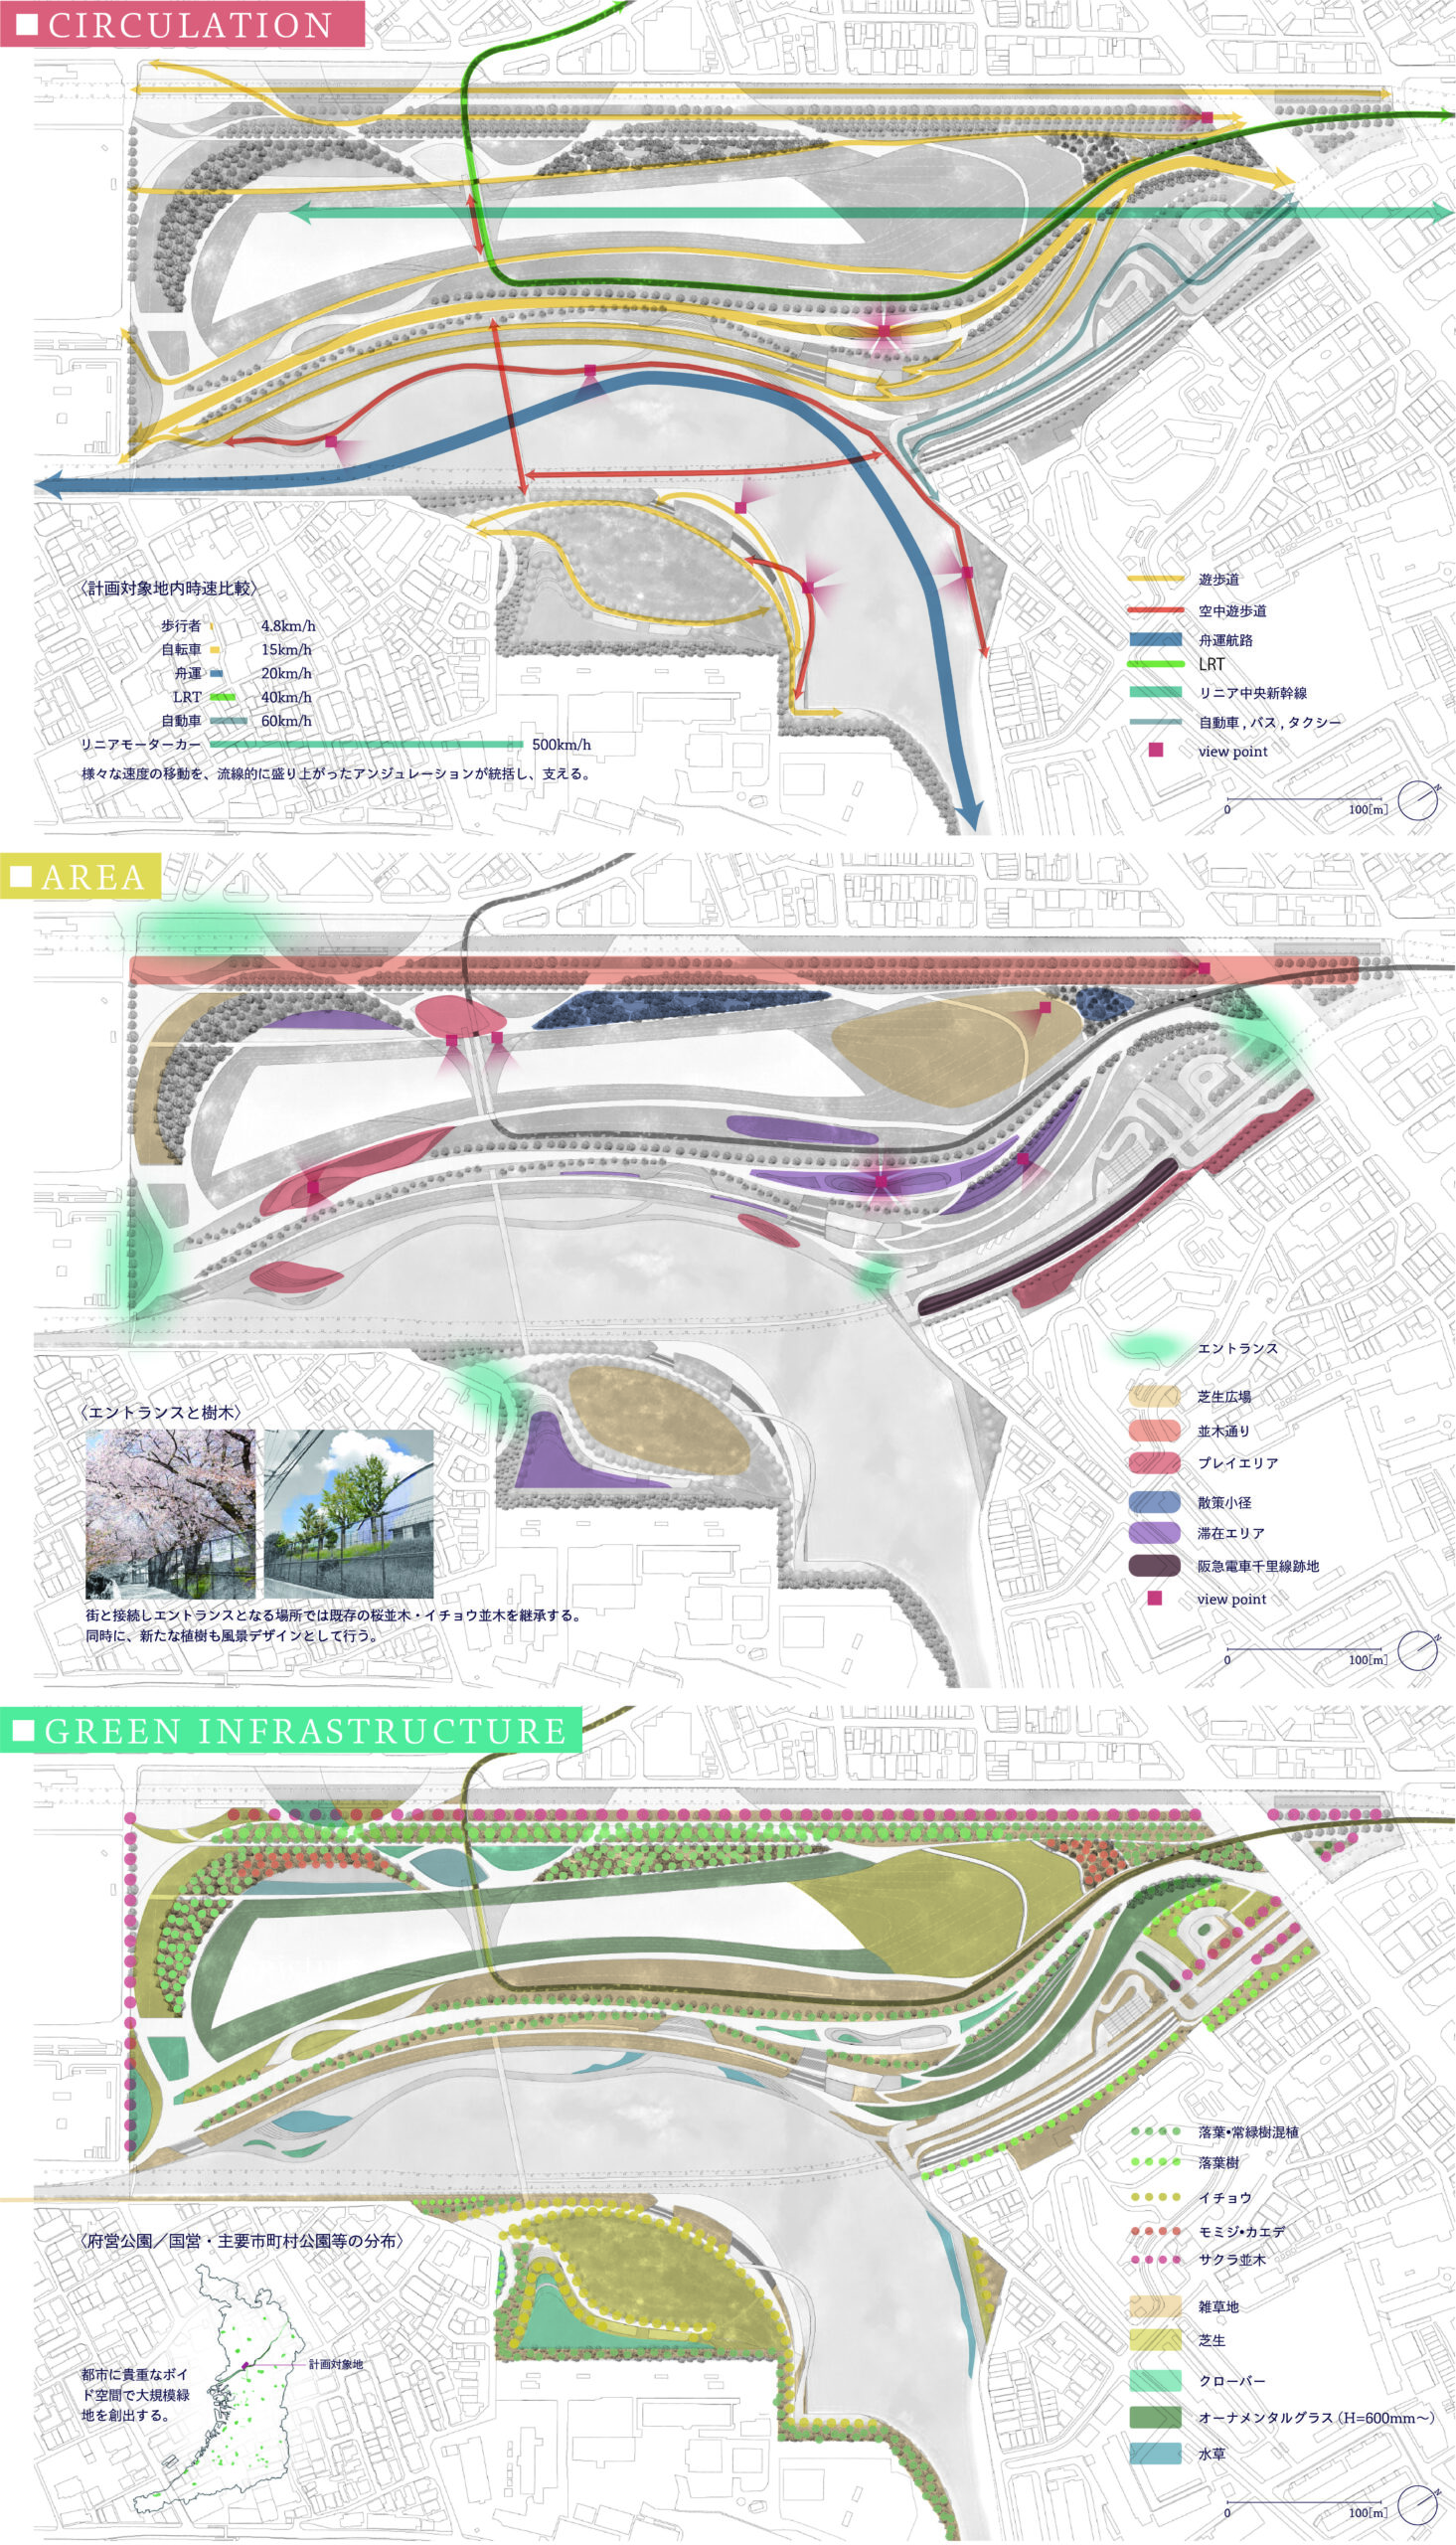 大大阪計画-交通インフラの再編と新たな都市の姿-